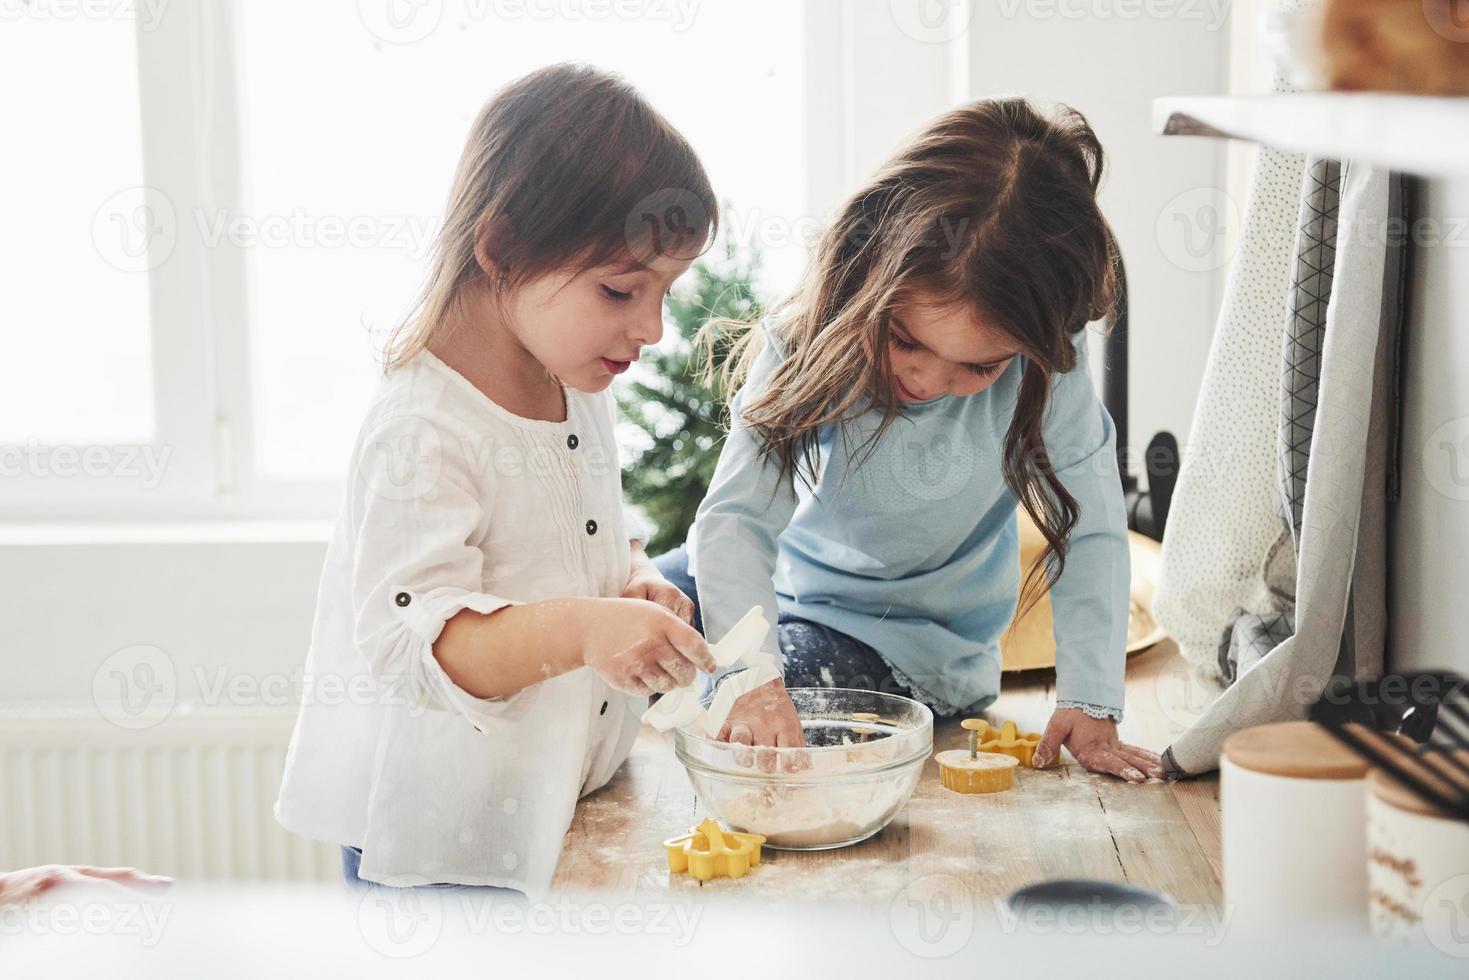 ceux-ci sont axés sur le travail. amis d'âge préscolaire apprenant à cuisiner avec de la farine dans la cuisine blanche photo